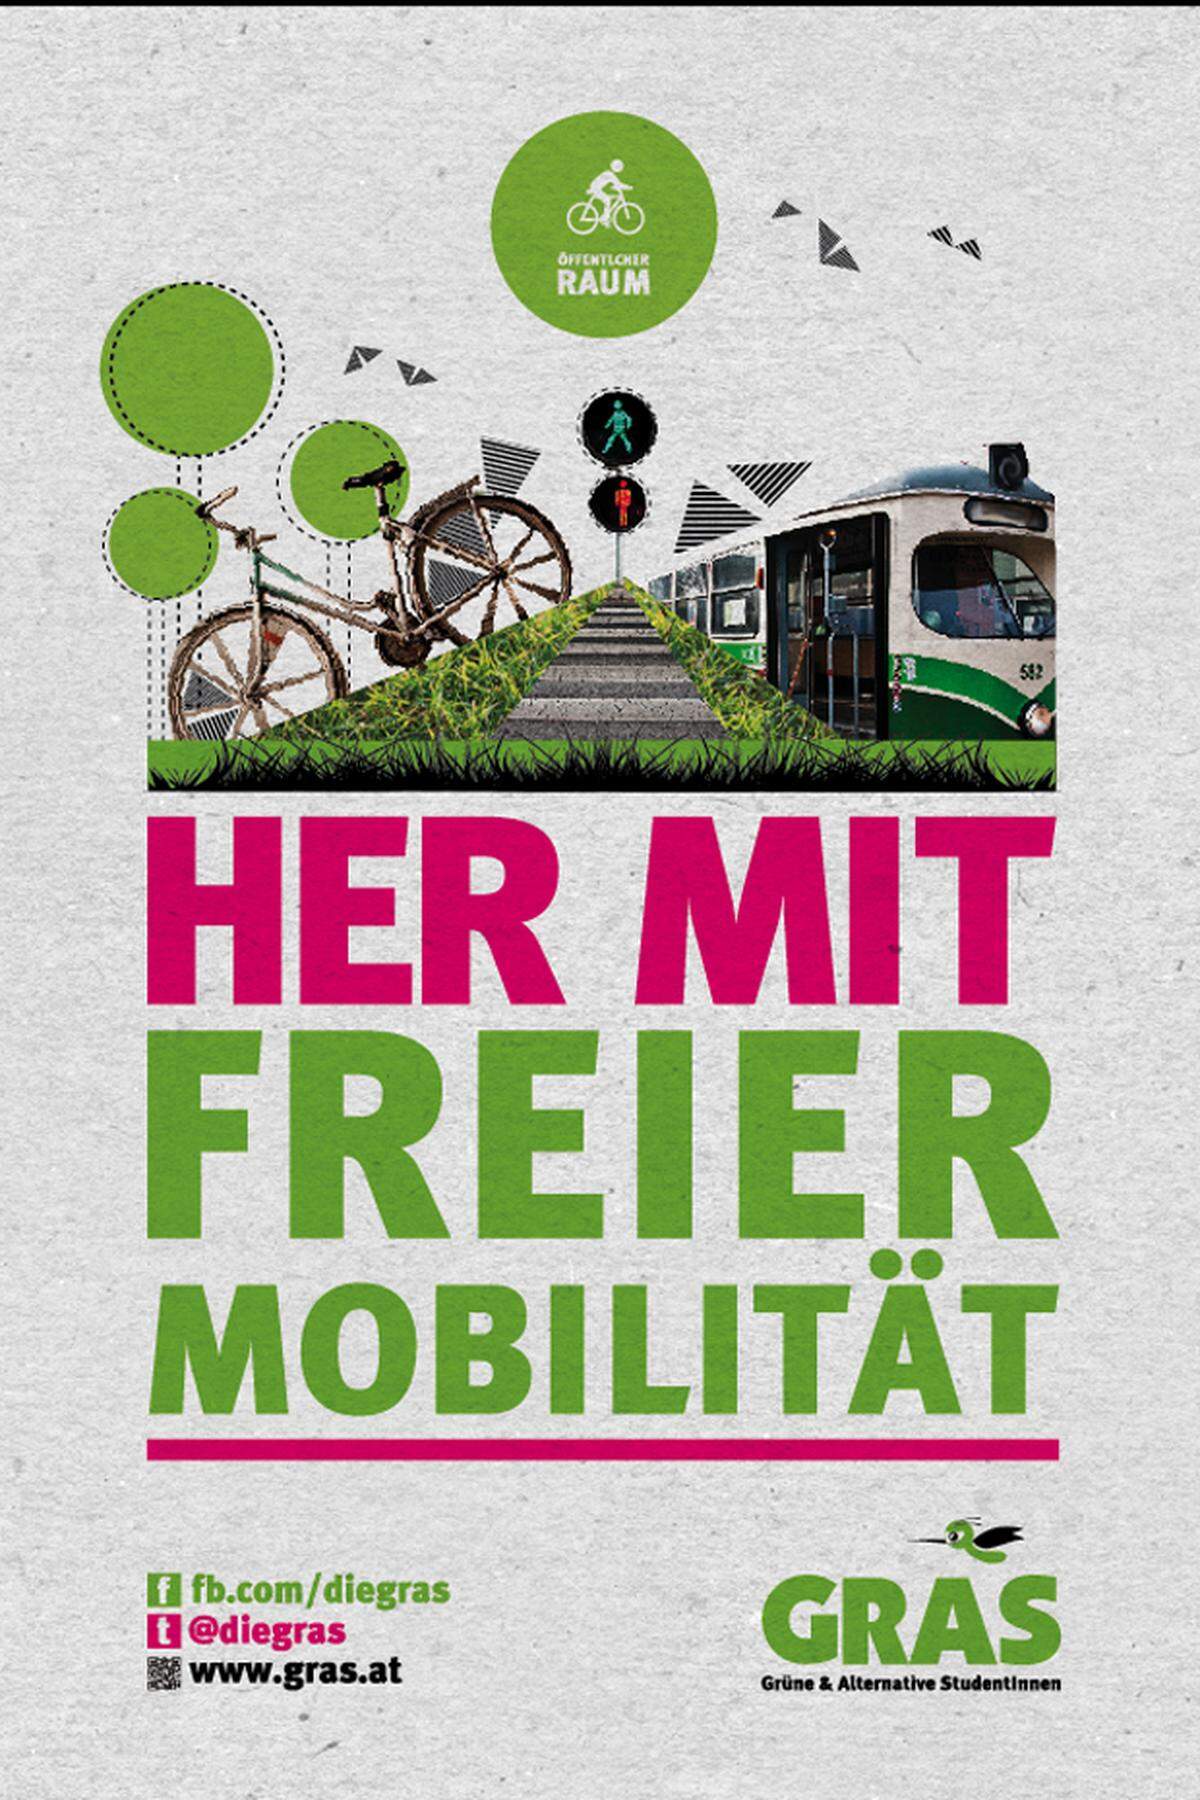 Gesetzt wird auf Themen wie Mobilität. Die Forderung der Gras: Mehr Abstellplätze für Fahrräder und Gratistickets für alle öffentlichen Verkehrsmittel.